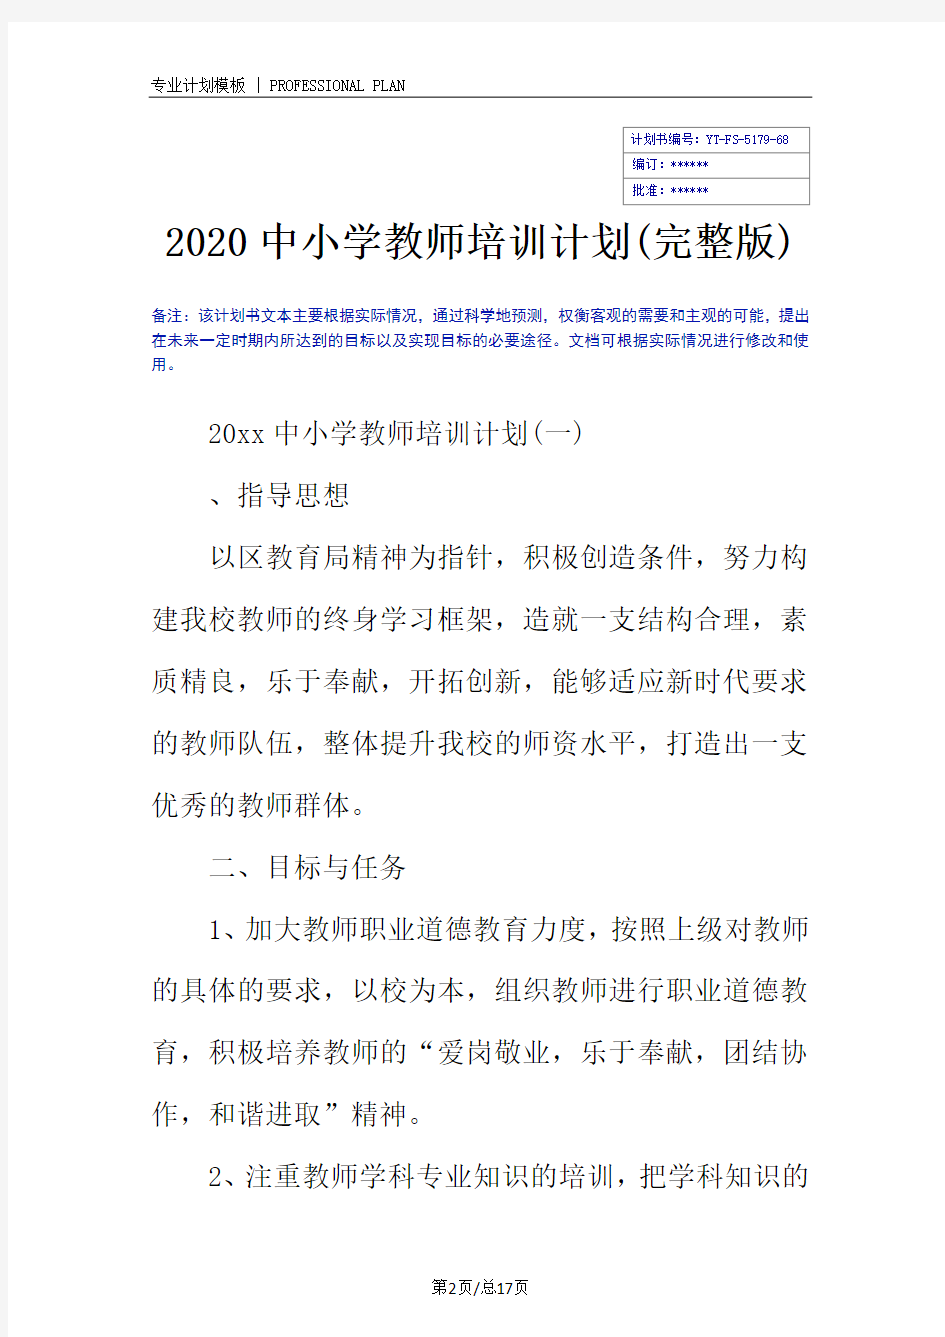 2020中小学教师培训计划(完整版)